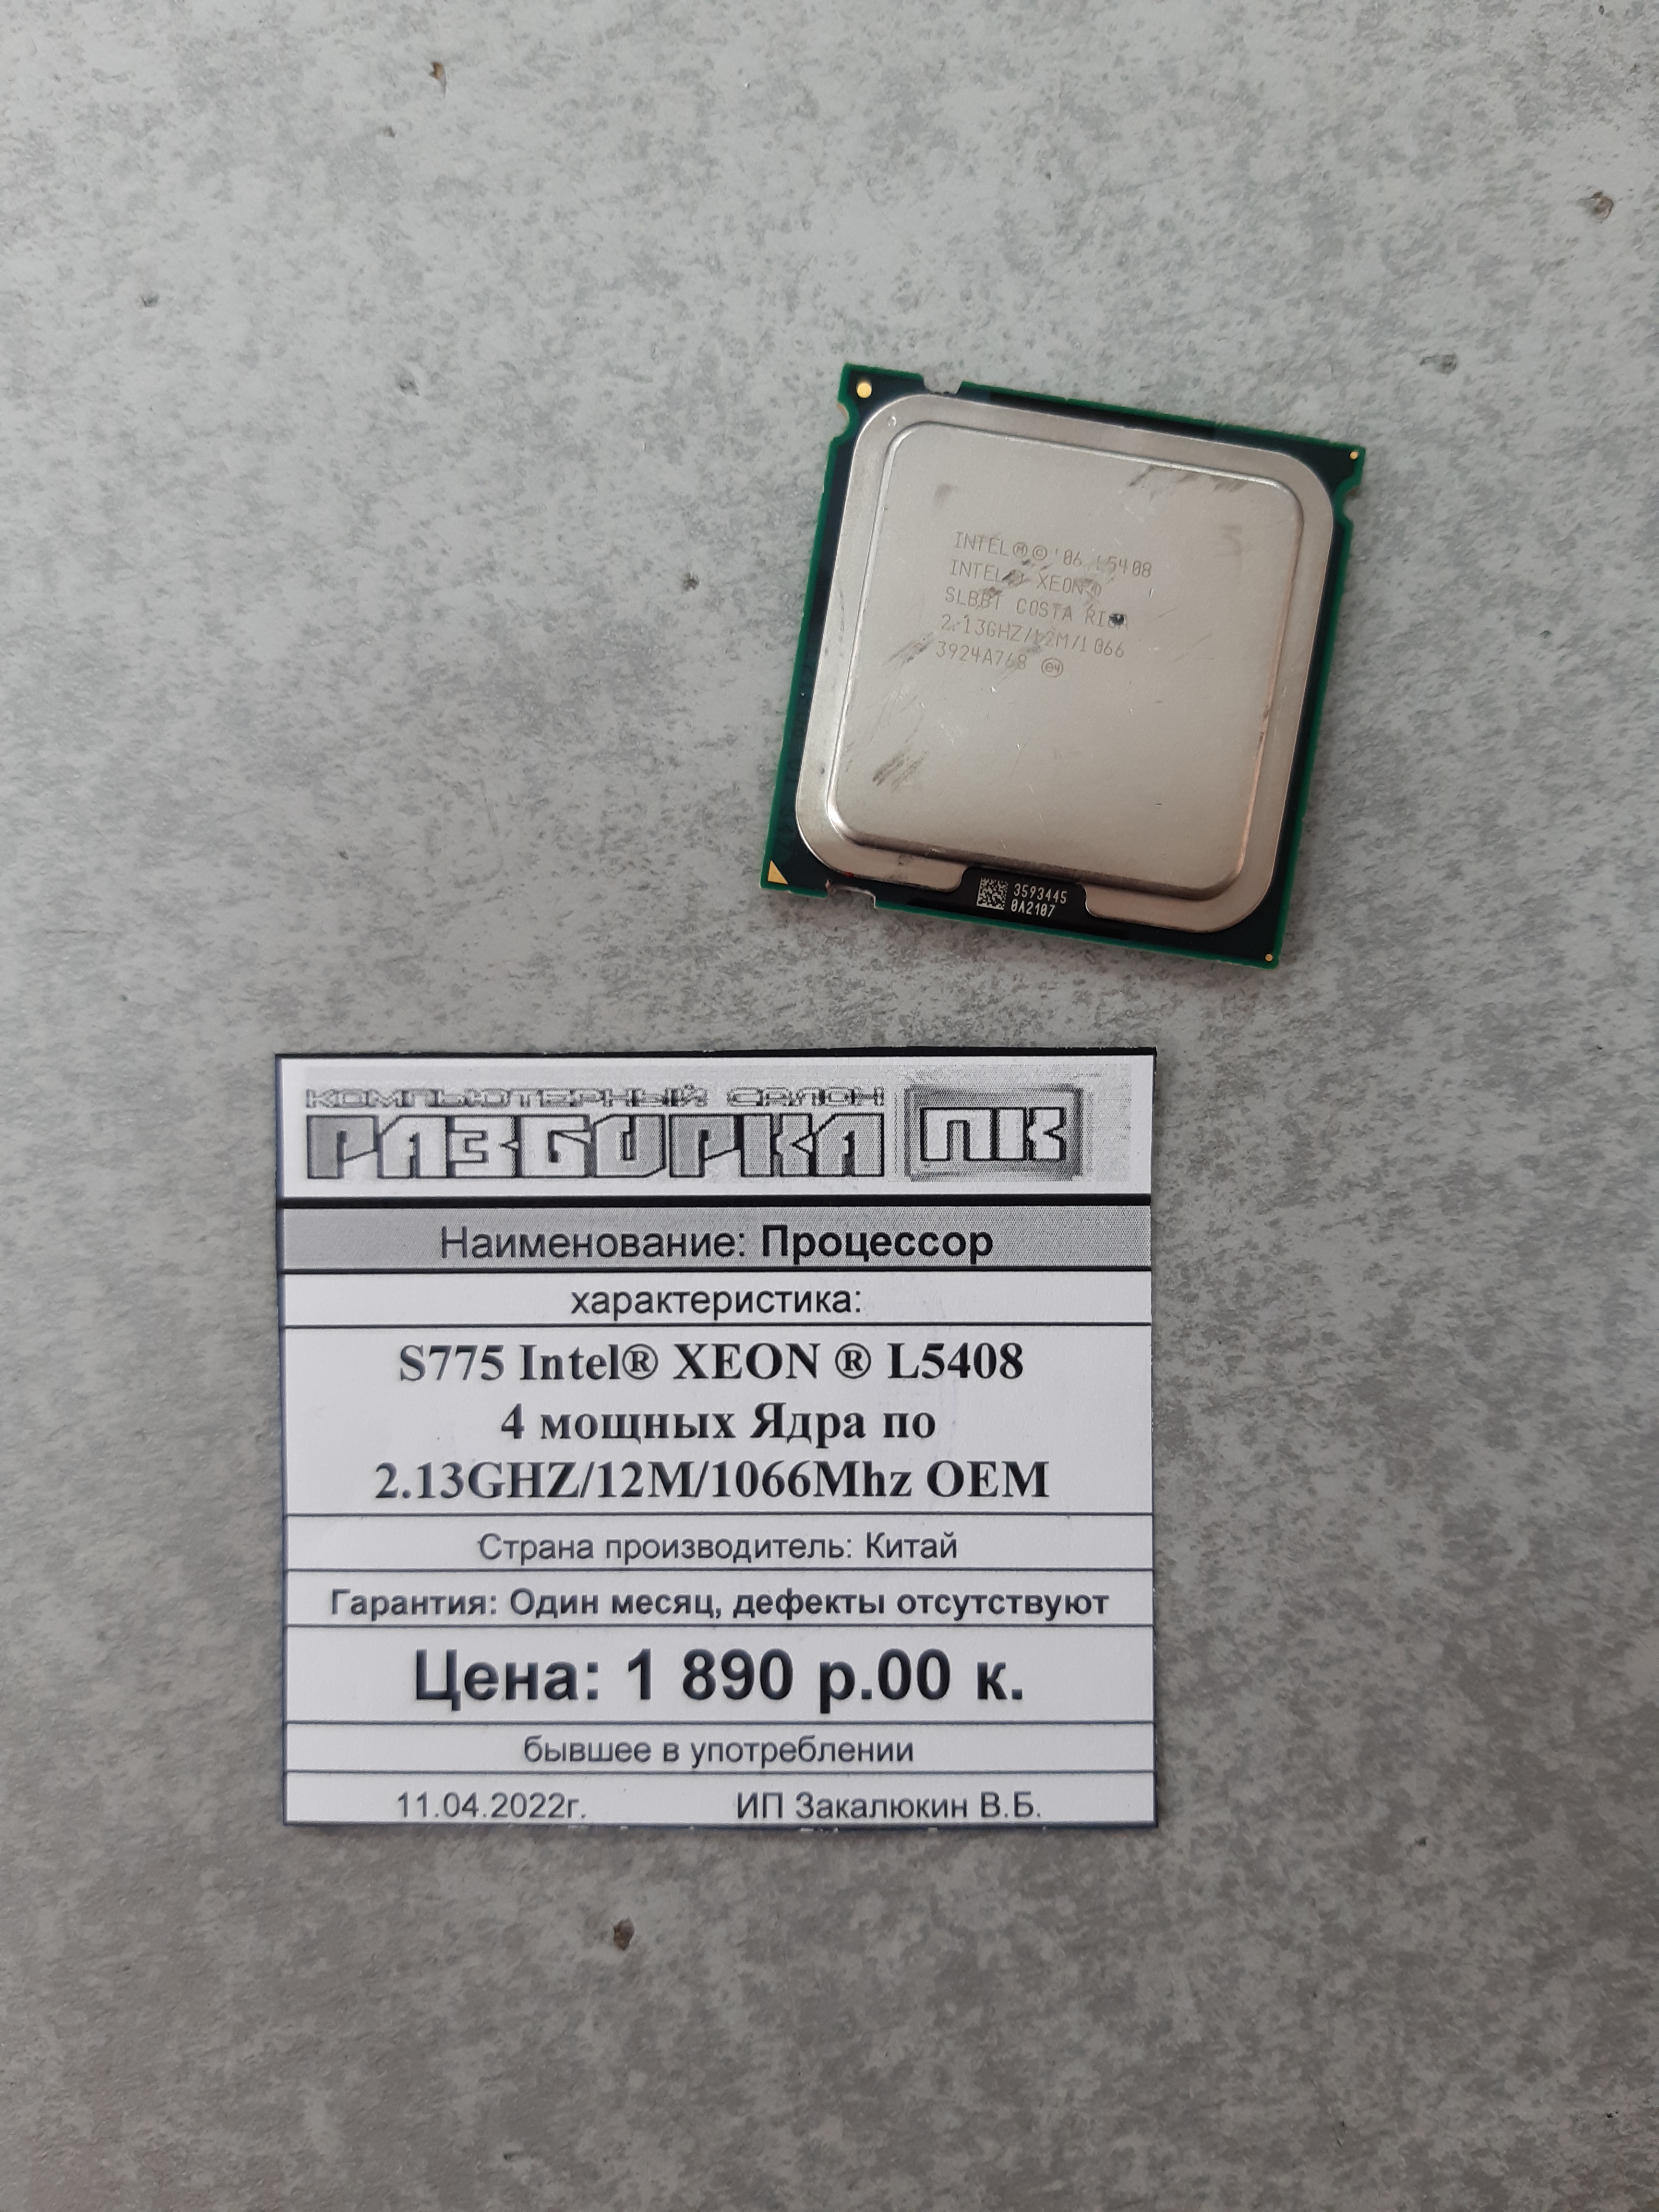 Процессор S775 Intel® XEON ® L5408